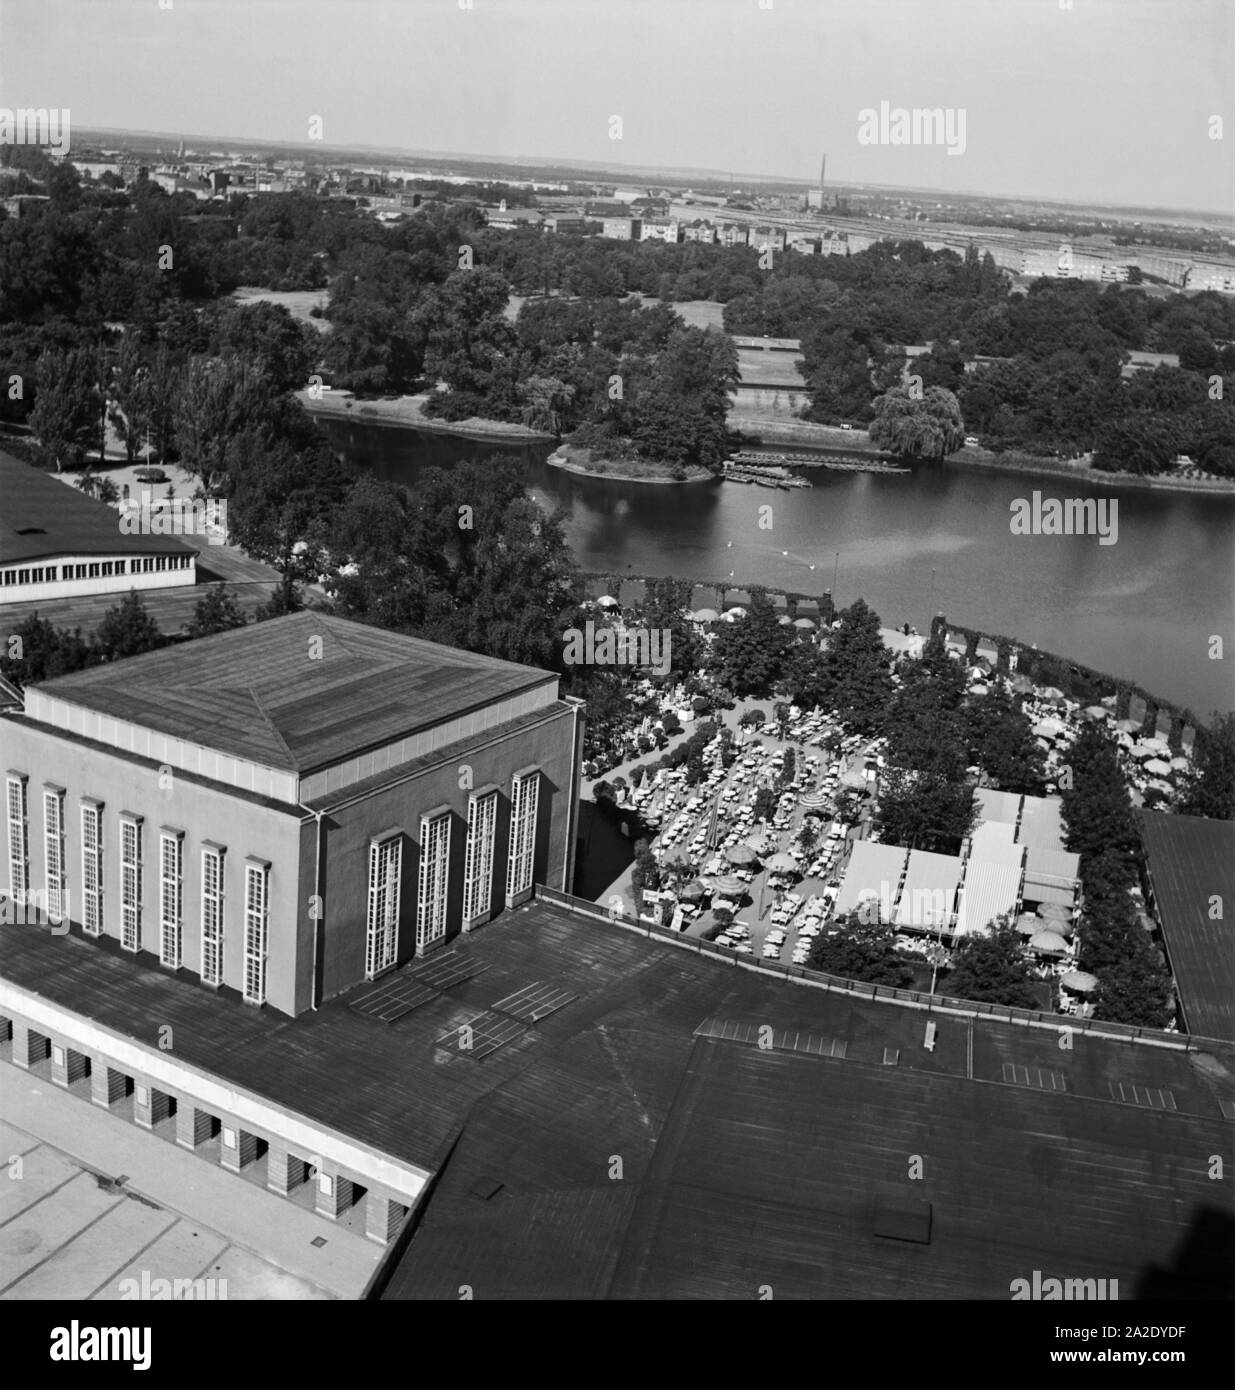 Luftbild der Ausstellungshallen am Adolf Mittag See in Magdeburg, Deutschland 1930er Jahre. Aerial view of the exhibition halls near the artificial Adolf Mittag lake at Magdeburg, Germany 1930s. Stock Photo